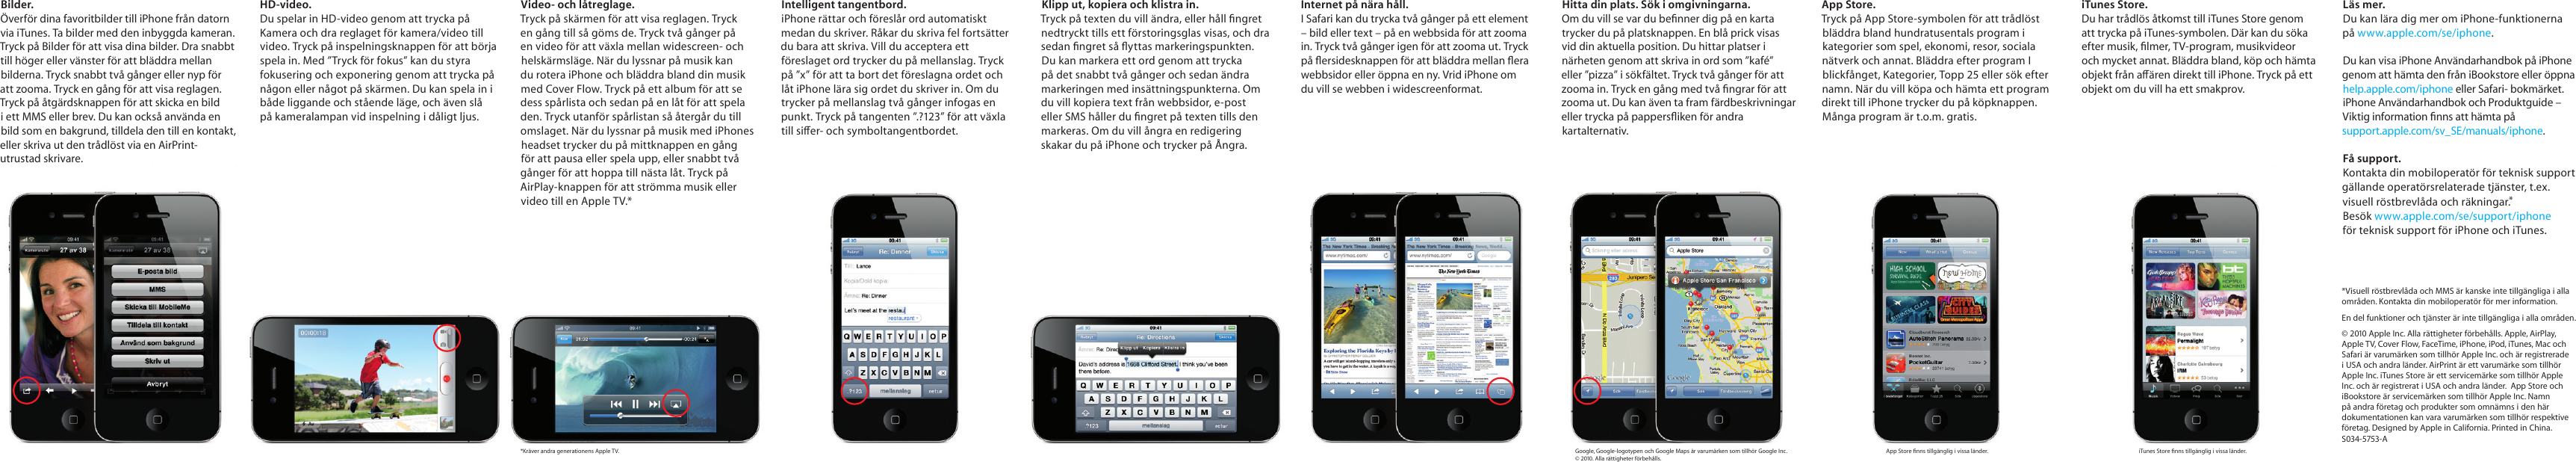 Page 2 of 2 - Apple IPhone 4 User Manual I Phone - Fingerfärdigheter Fingerfardigheter